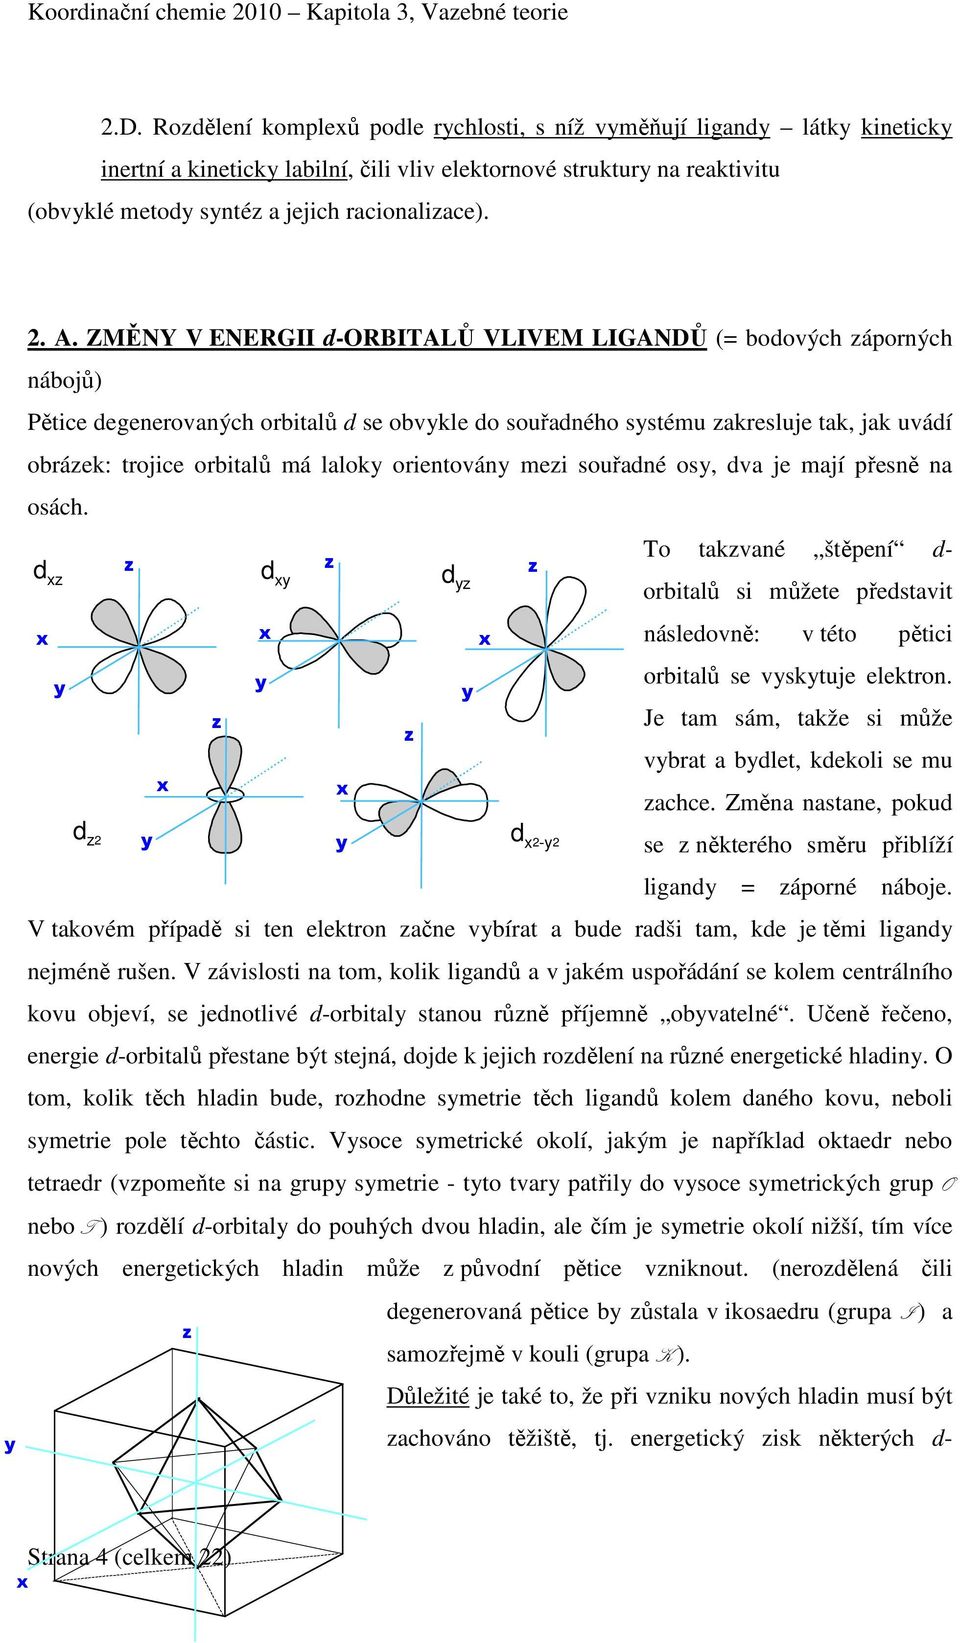 ZMĚNY V ENERGII d-orbitalů VLIVEM LIGANDŮ (= bodových záporných nábojů) Pětice degenerovaných orbitalů d se obvykle do souřadného systému zakresluje tak, jak uvádí obrázek: trojice orbitalů má laloky